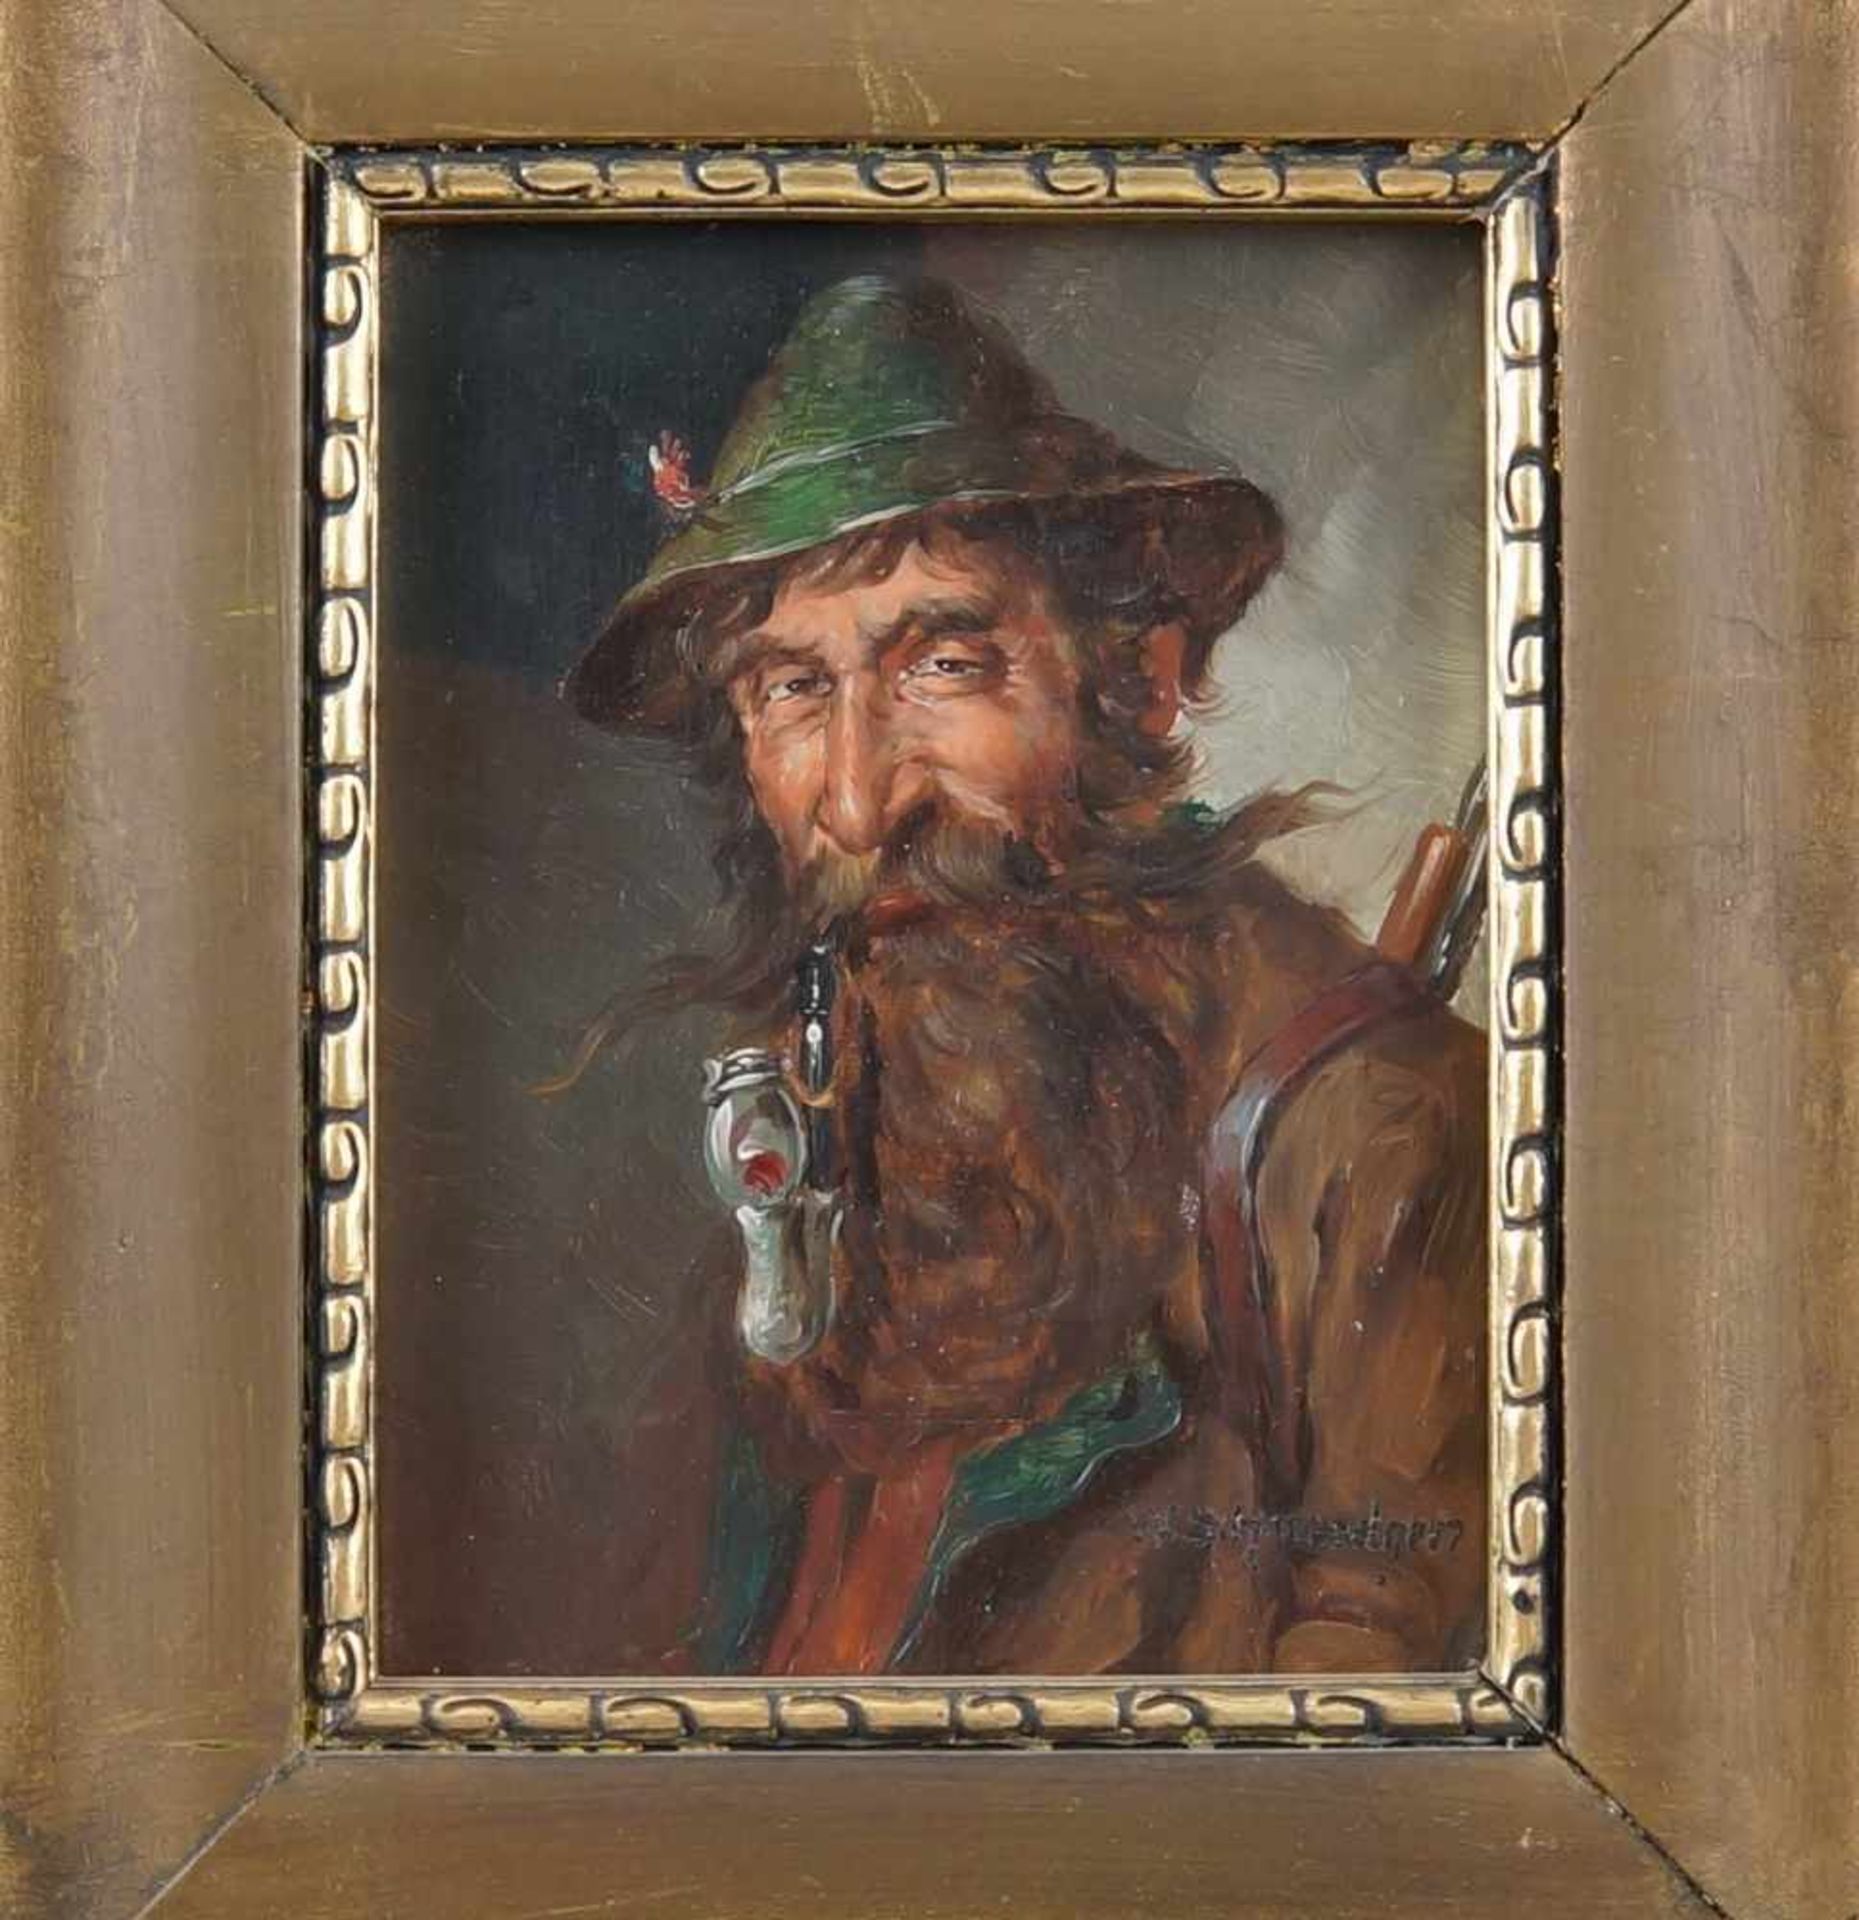 Jäger mit Hut und Pfeiffe, Öl auf Holz, gerahmt, signiert, W. Schmiedgen, 30x26cm- - -24.00 % - Bild 2 aus 5